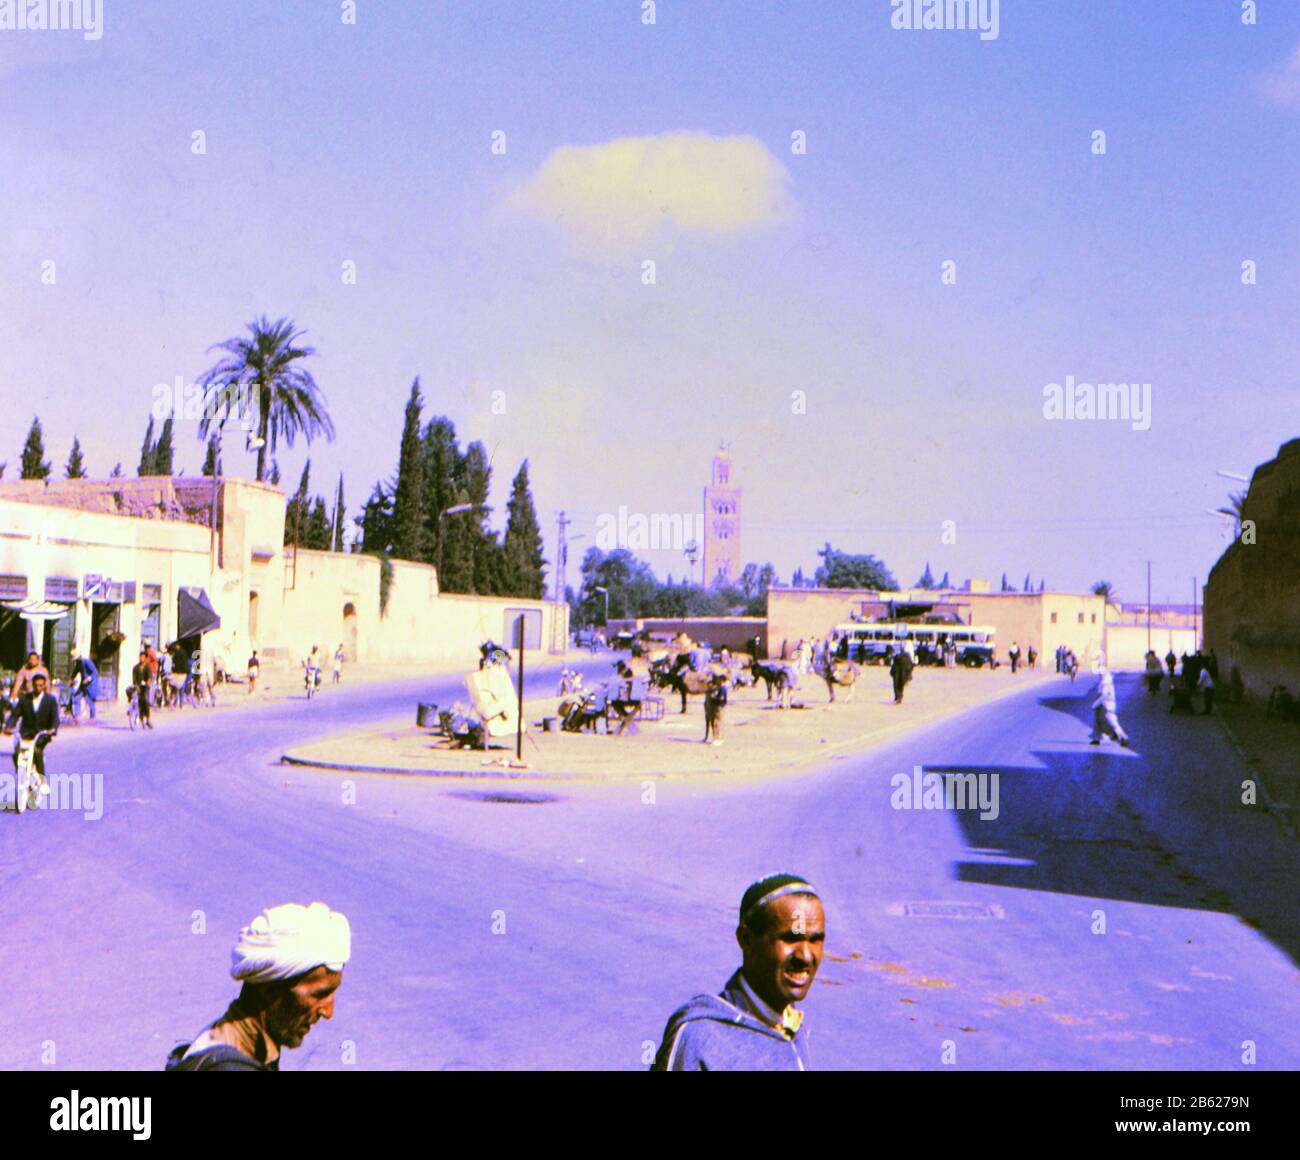 Scène de rue dans une ville au Maroc CA. 1969 Banque D'Images